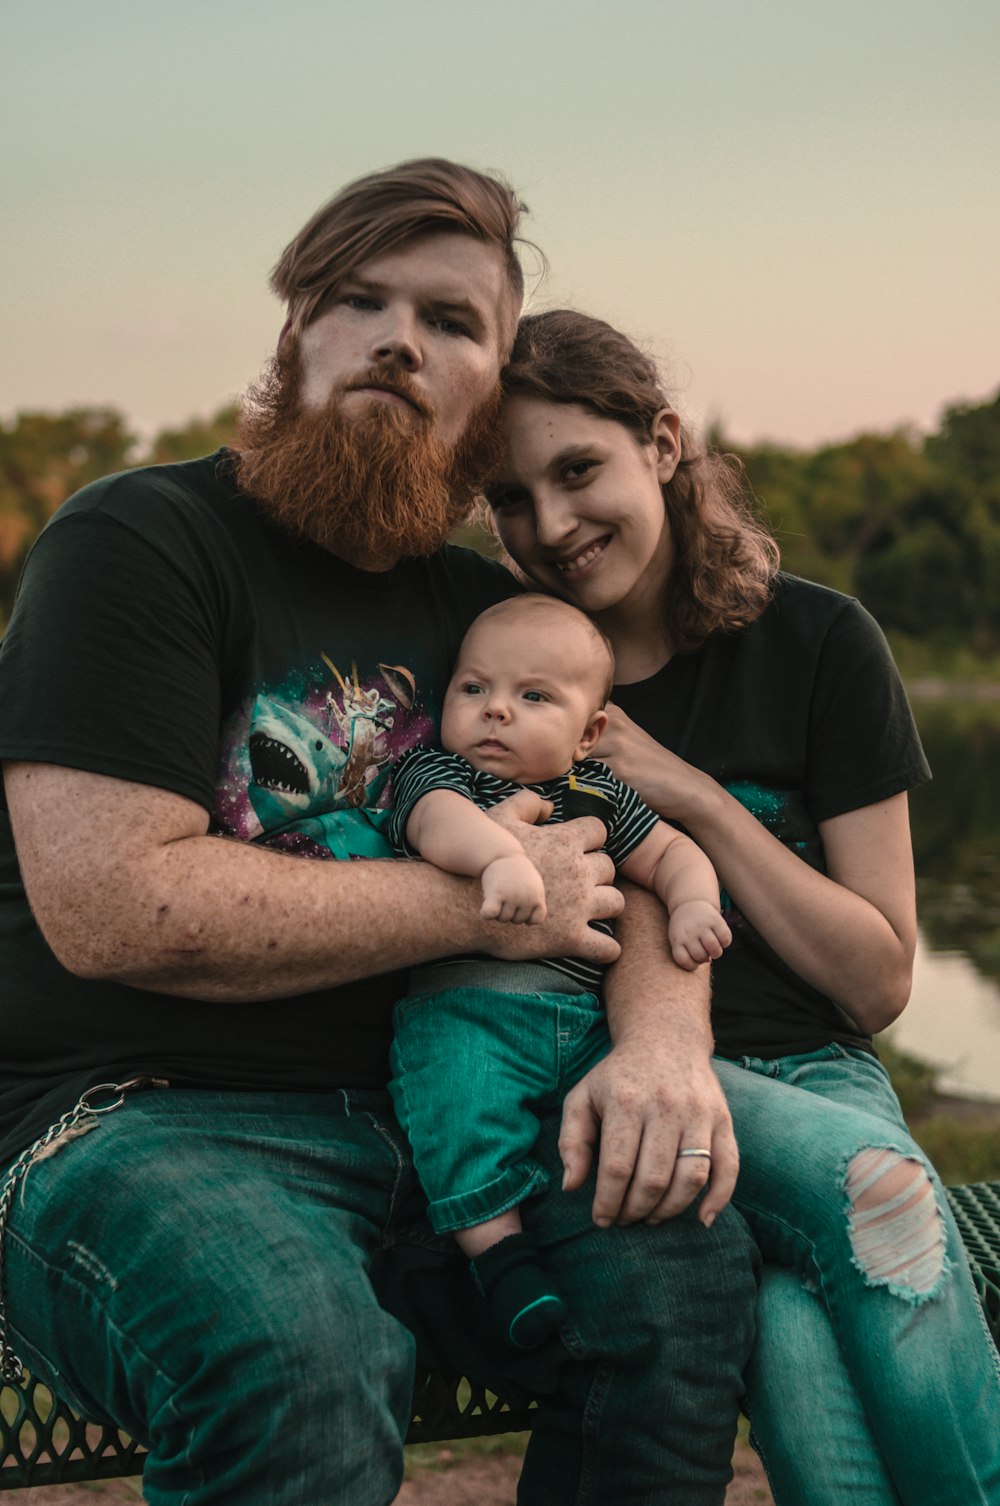 Mann, Frau und Baby sitzen auf einer Bank im Freien